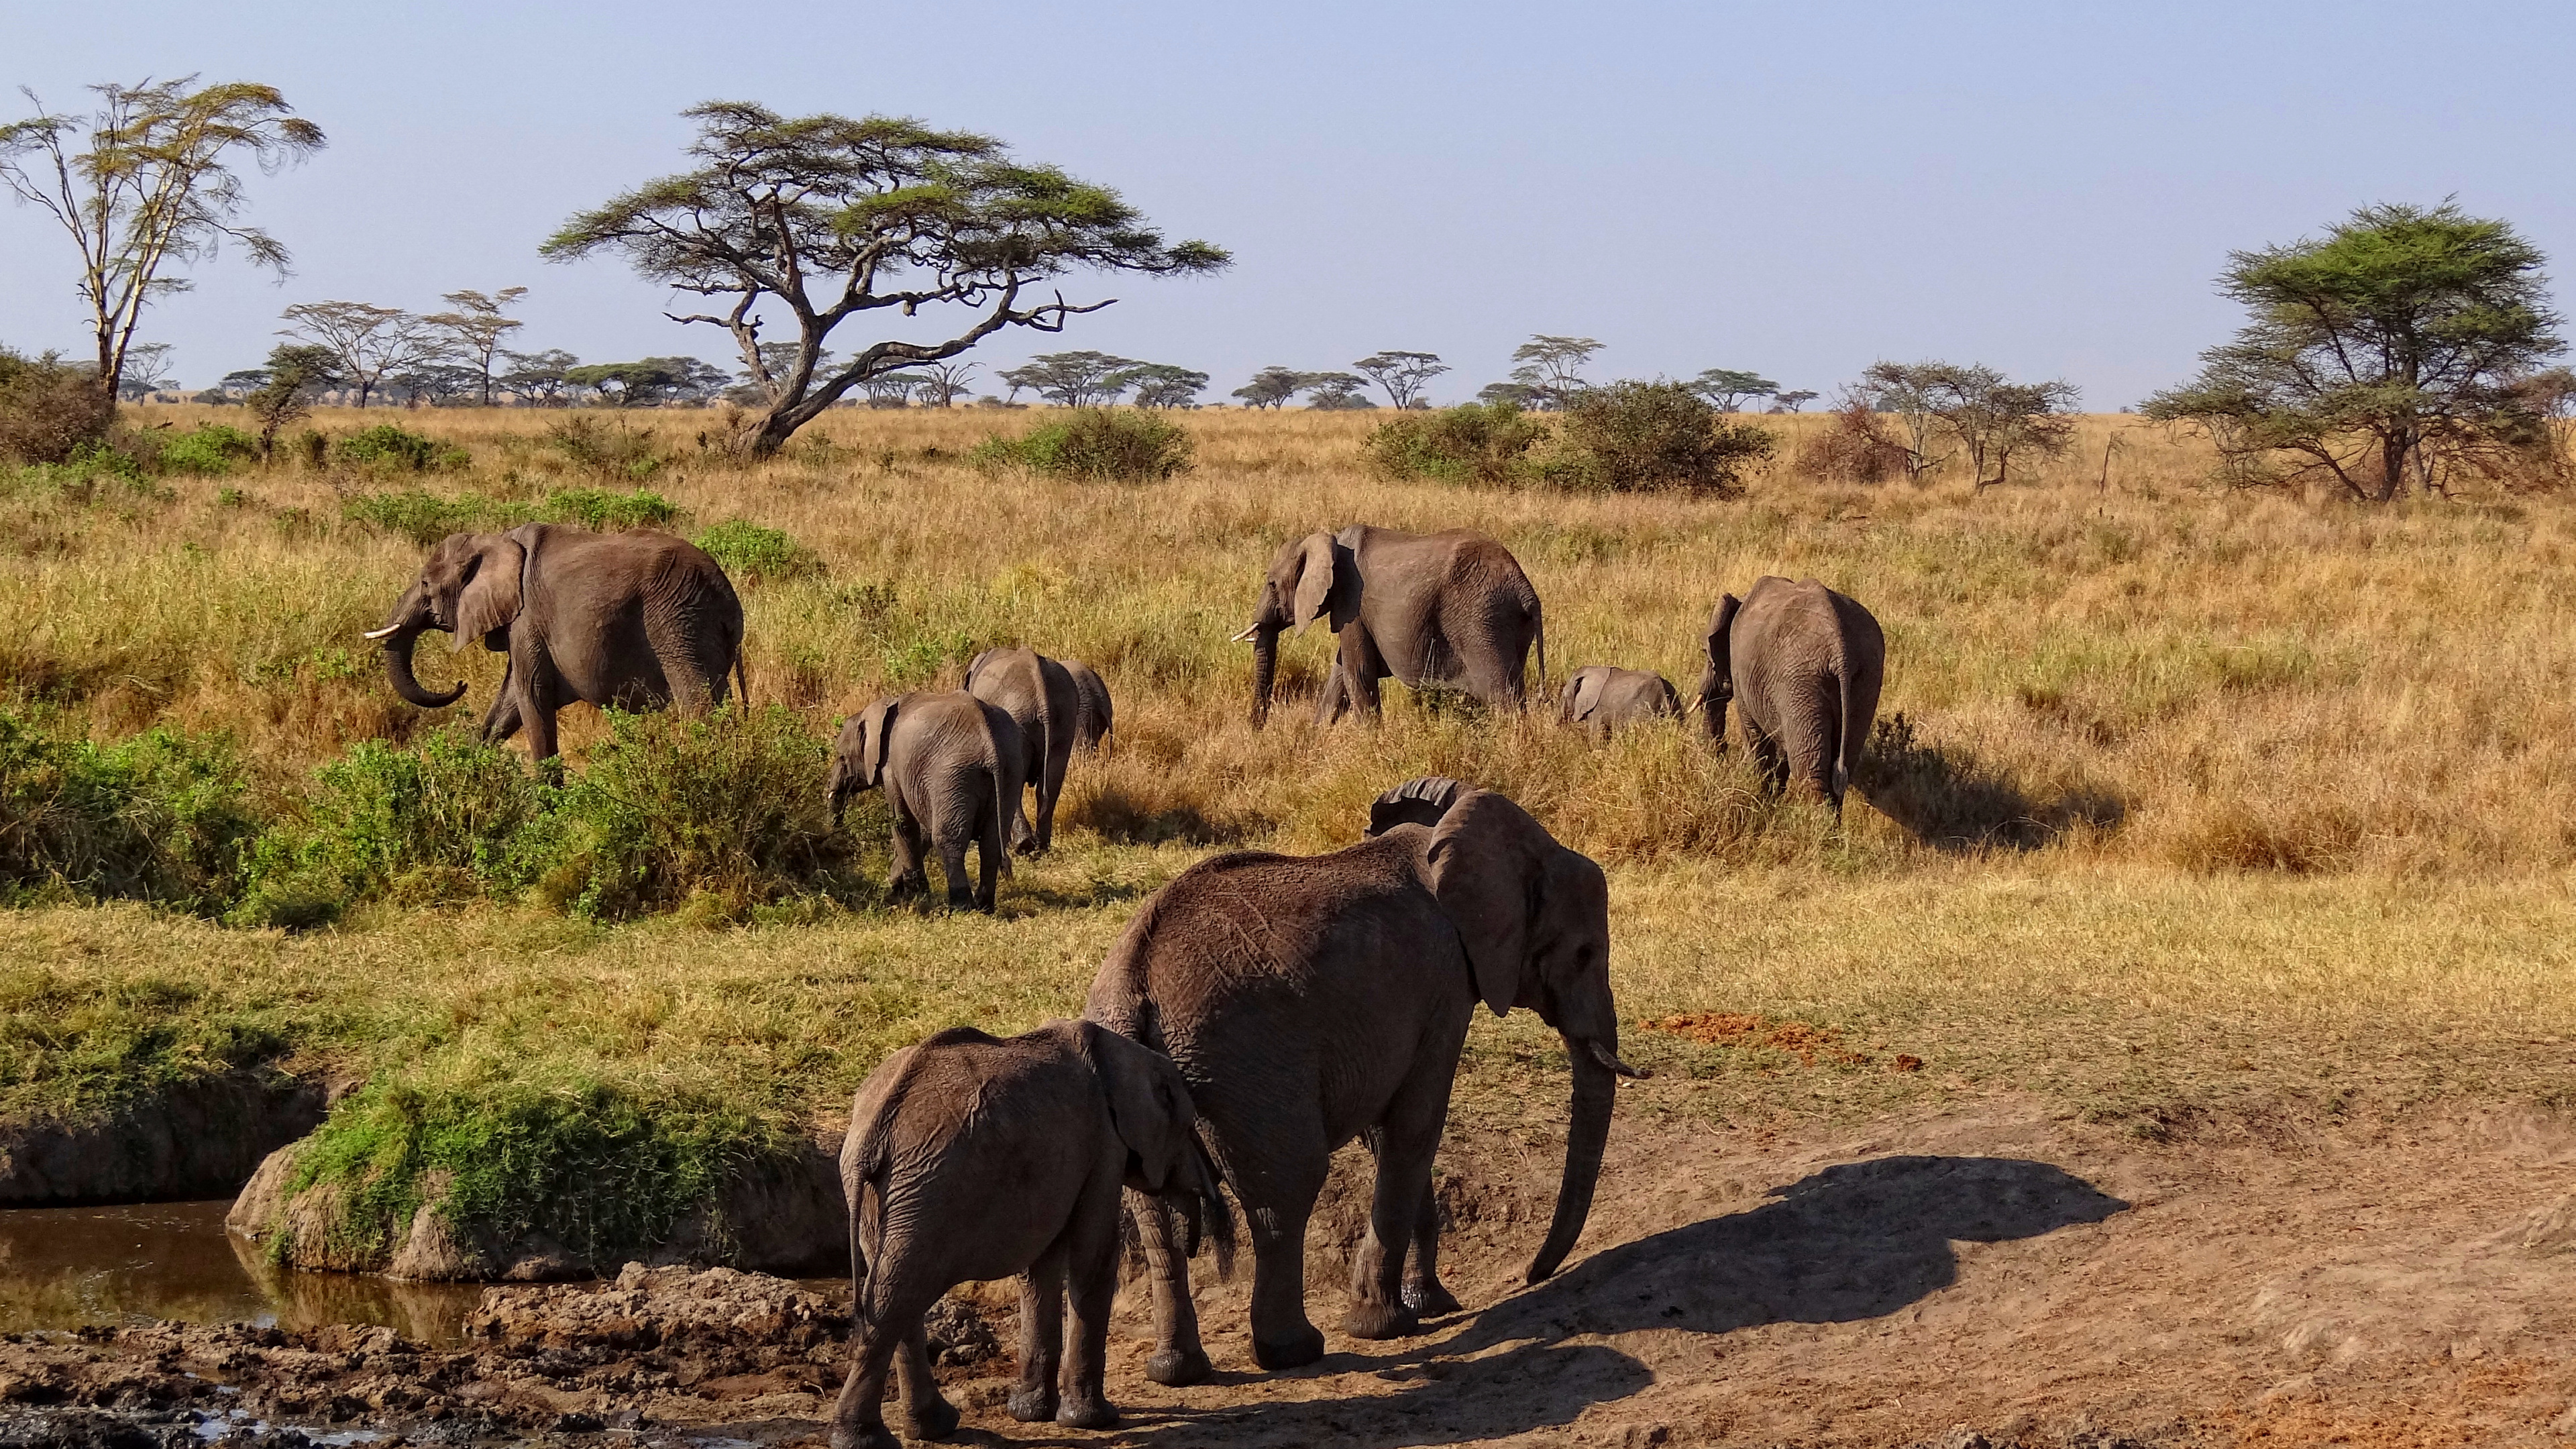 塞伦盖蒂国家公园, Safari, 公园, 野生动物, 陆地动物 壁纸 3840x2160 允许